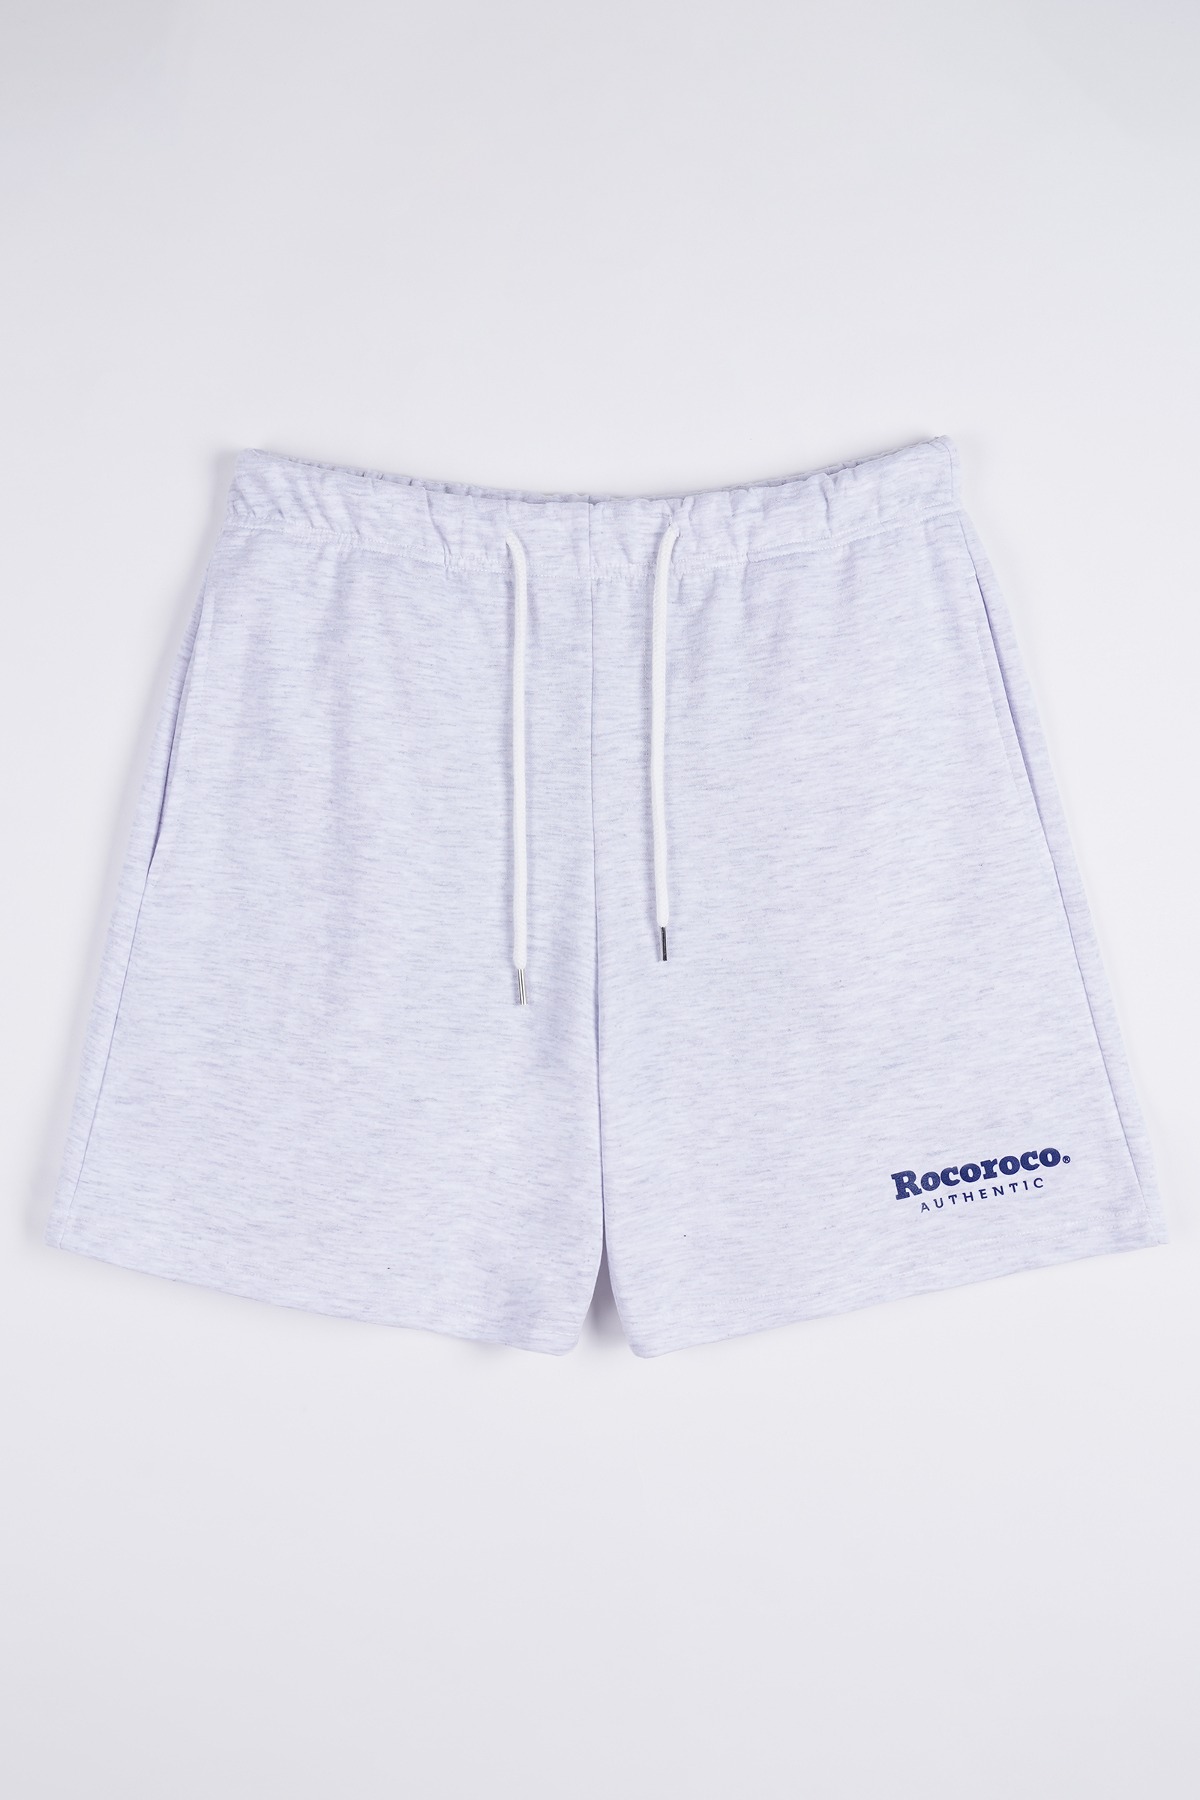 R Authentic Shorts white melange